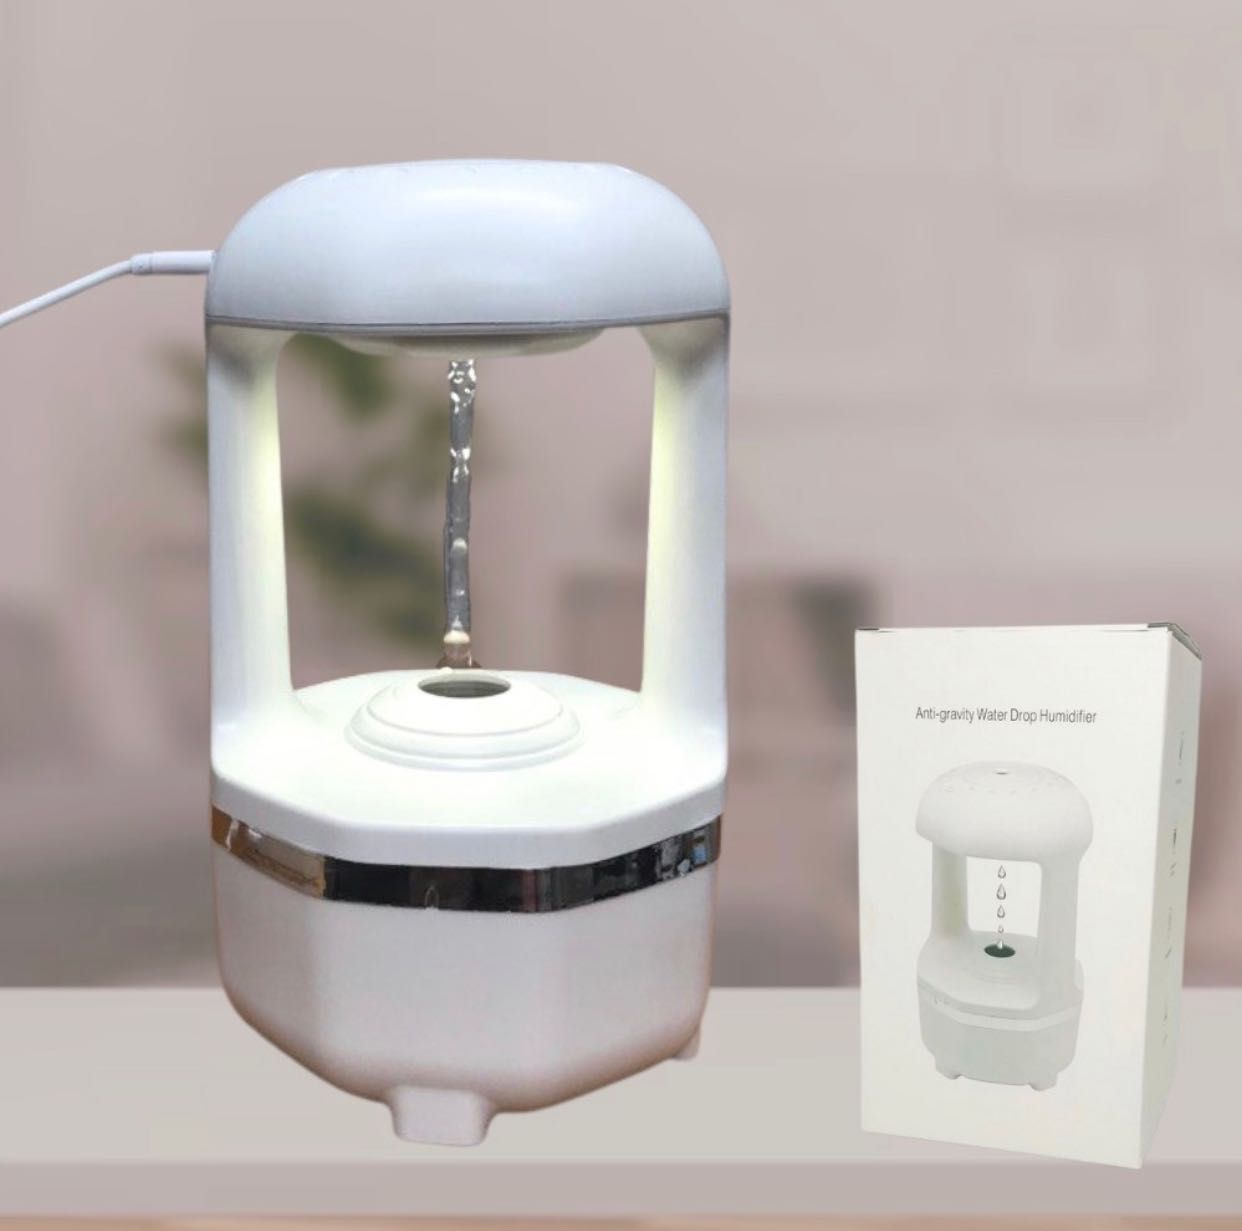 Увлажнитель воздуха антигравитационный 2в1 Water Drop Humidifier